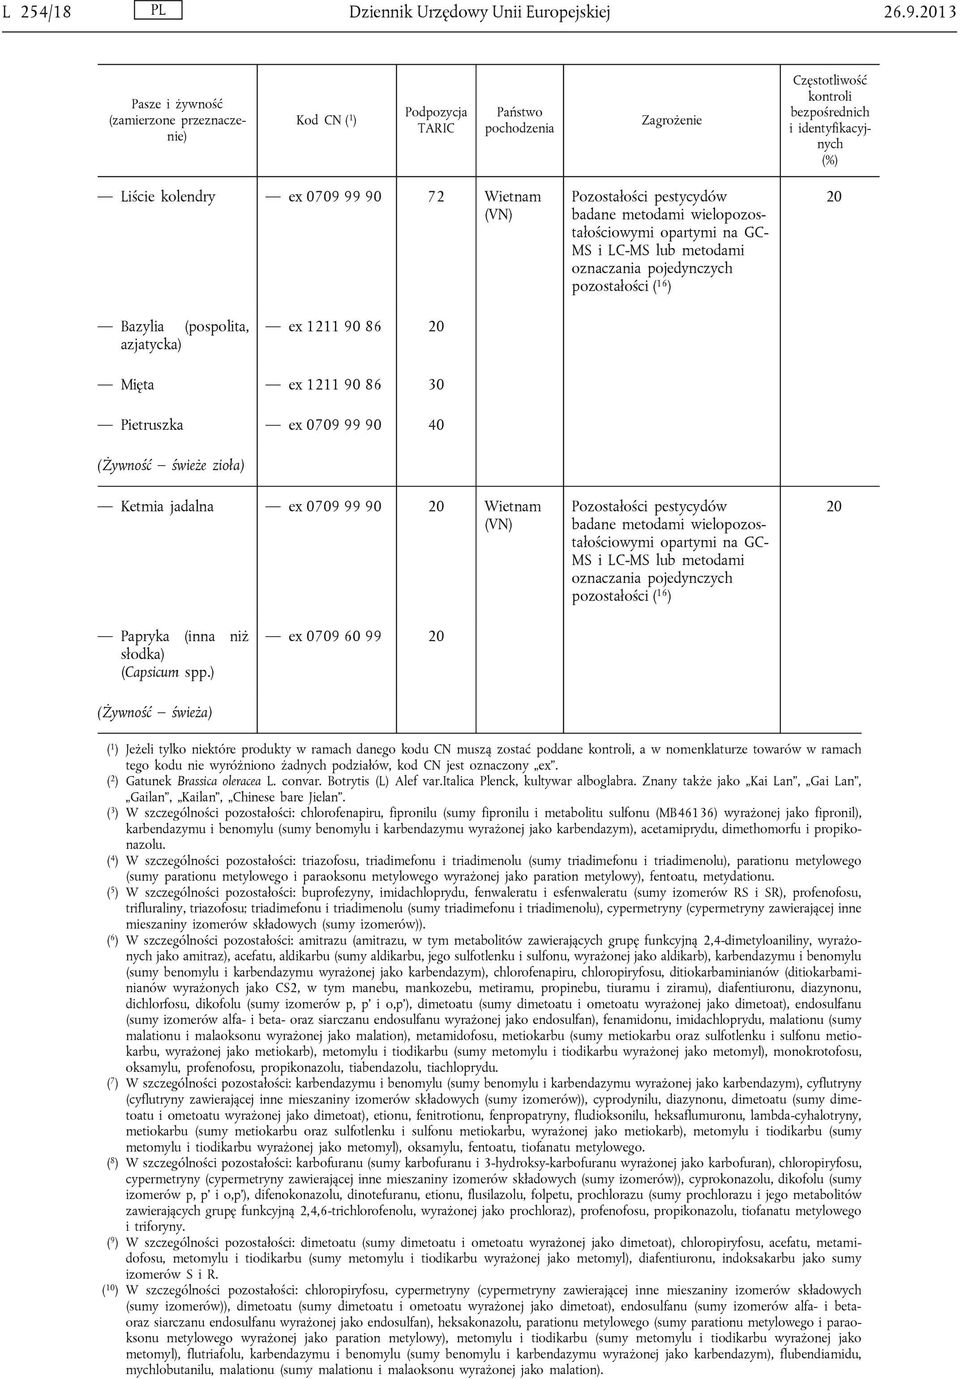 jadalna ex 0709 99 90 Wietnam (VN) pozostałości ( 16 ) Papryka (inna niż słodka) (Capsicum spp.